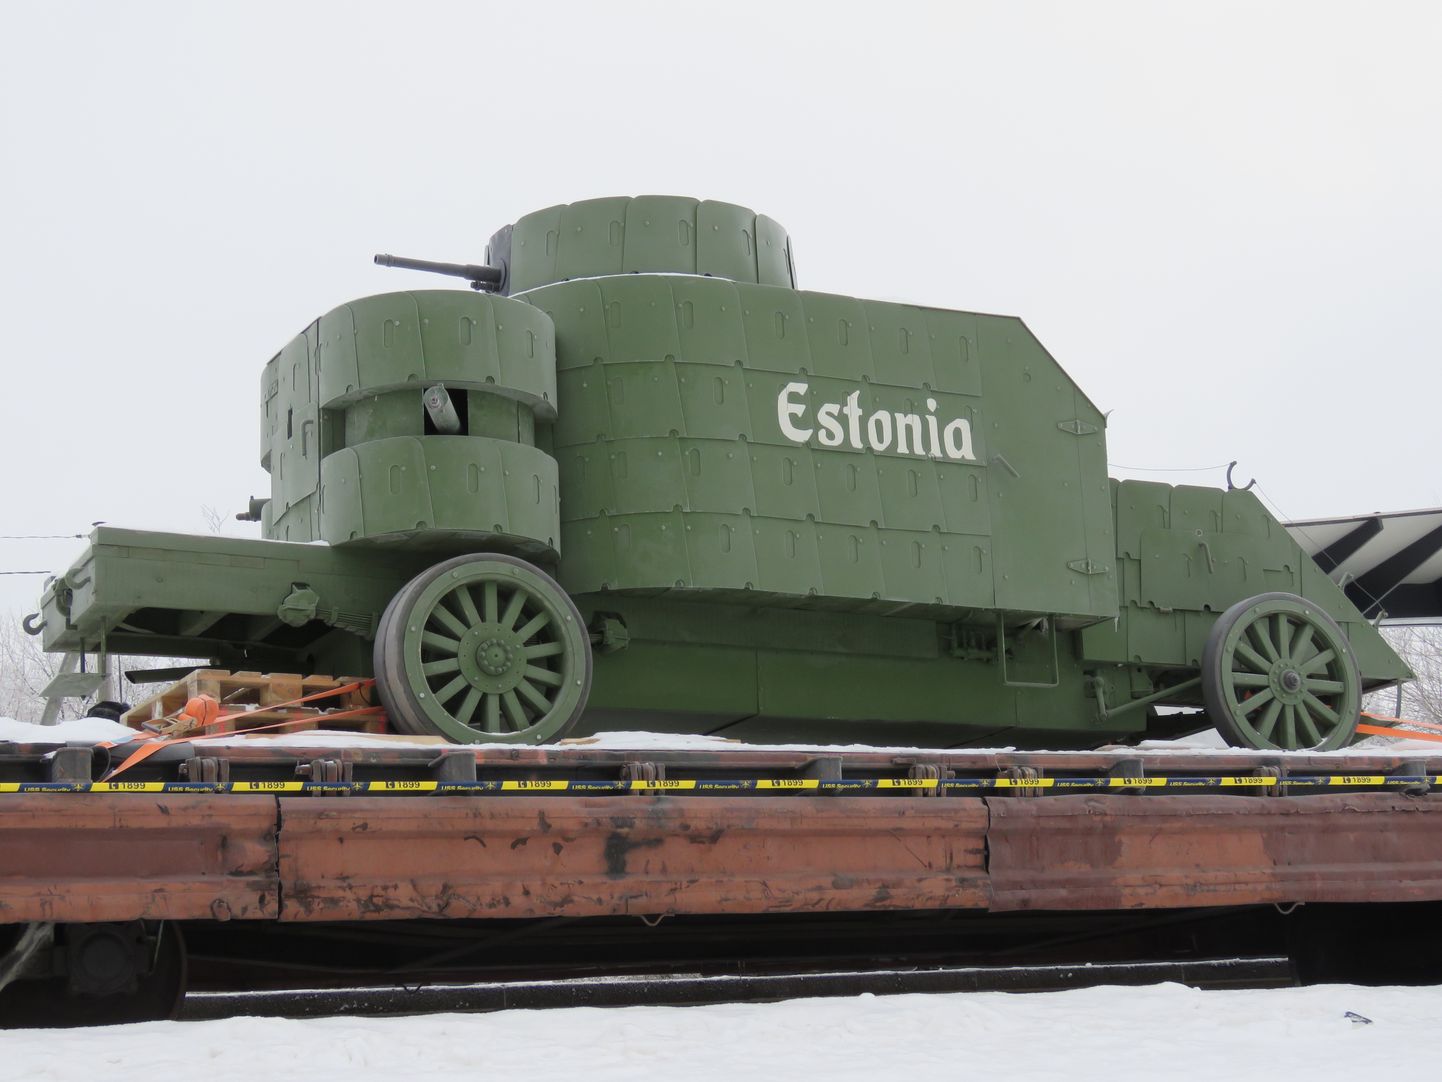 Vabadussõja soomusrongist inspireeritud näidis nimega nr 7 Wabadus jõudis reedel Valgamaale Puka raudteejaama.